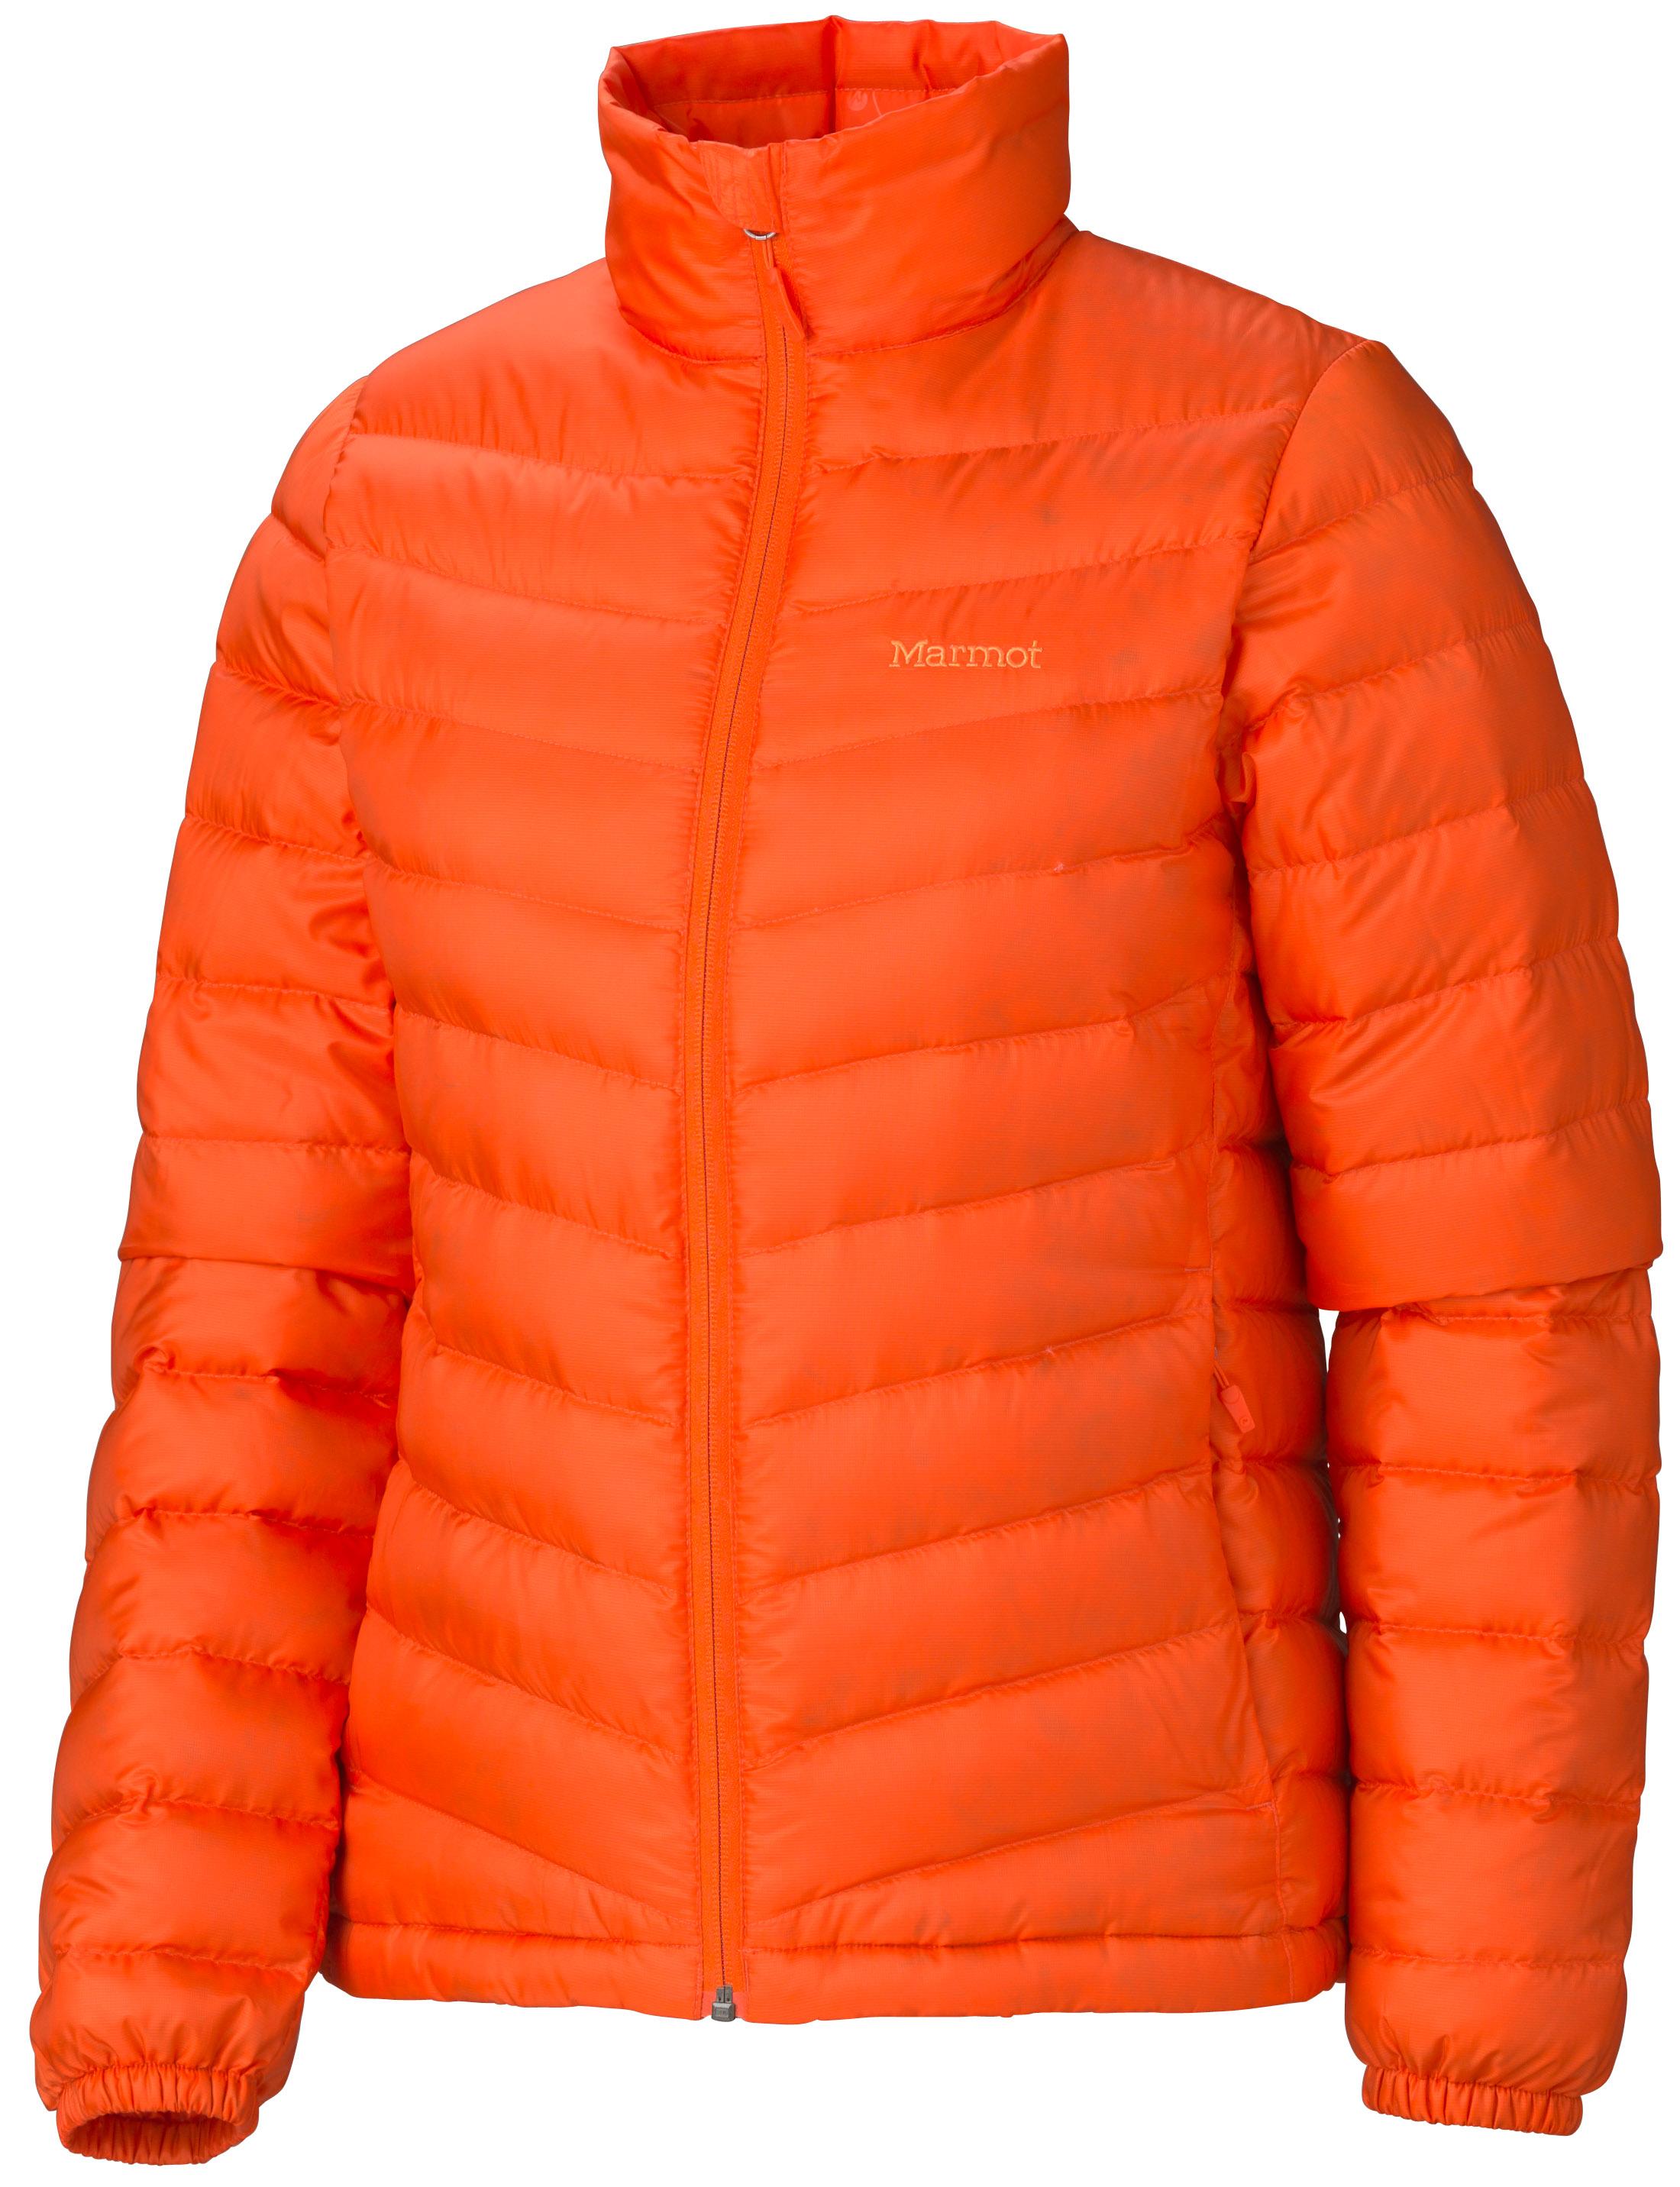 Foto Marmot Jena Jacket Lady Sunset Orange (Modell 2013/14)